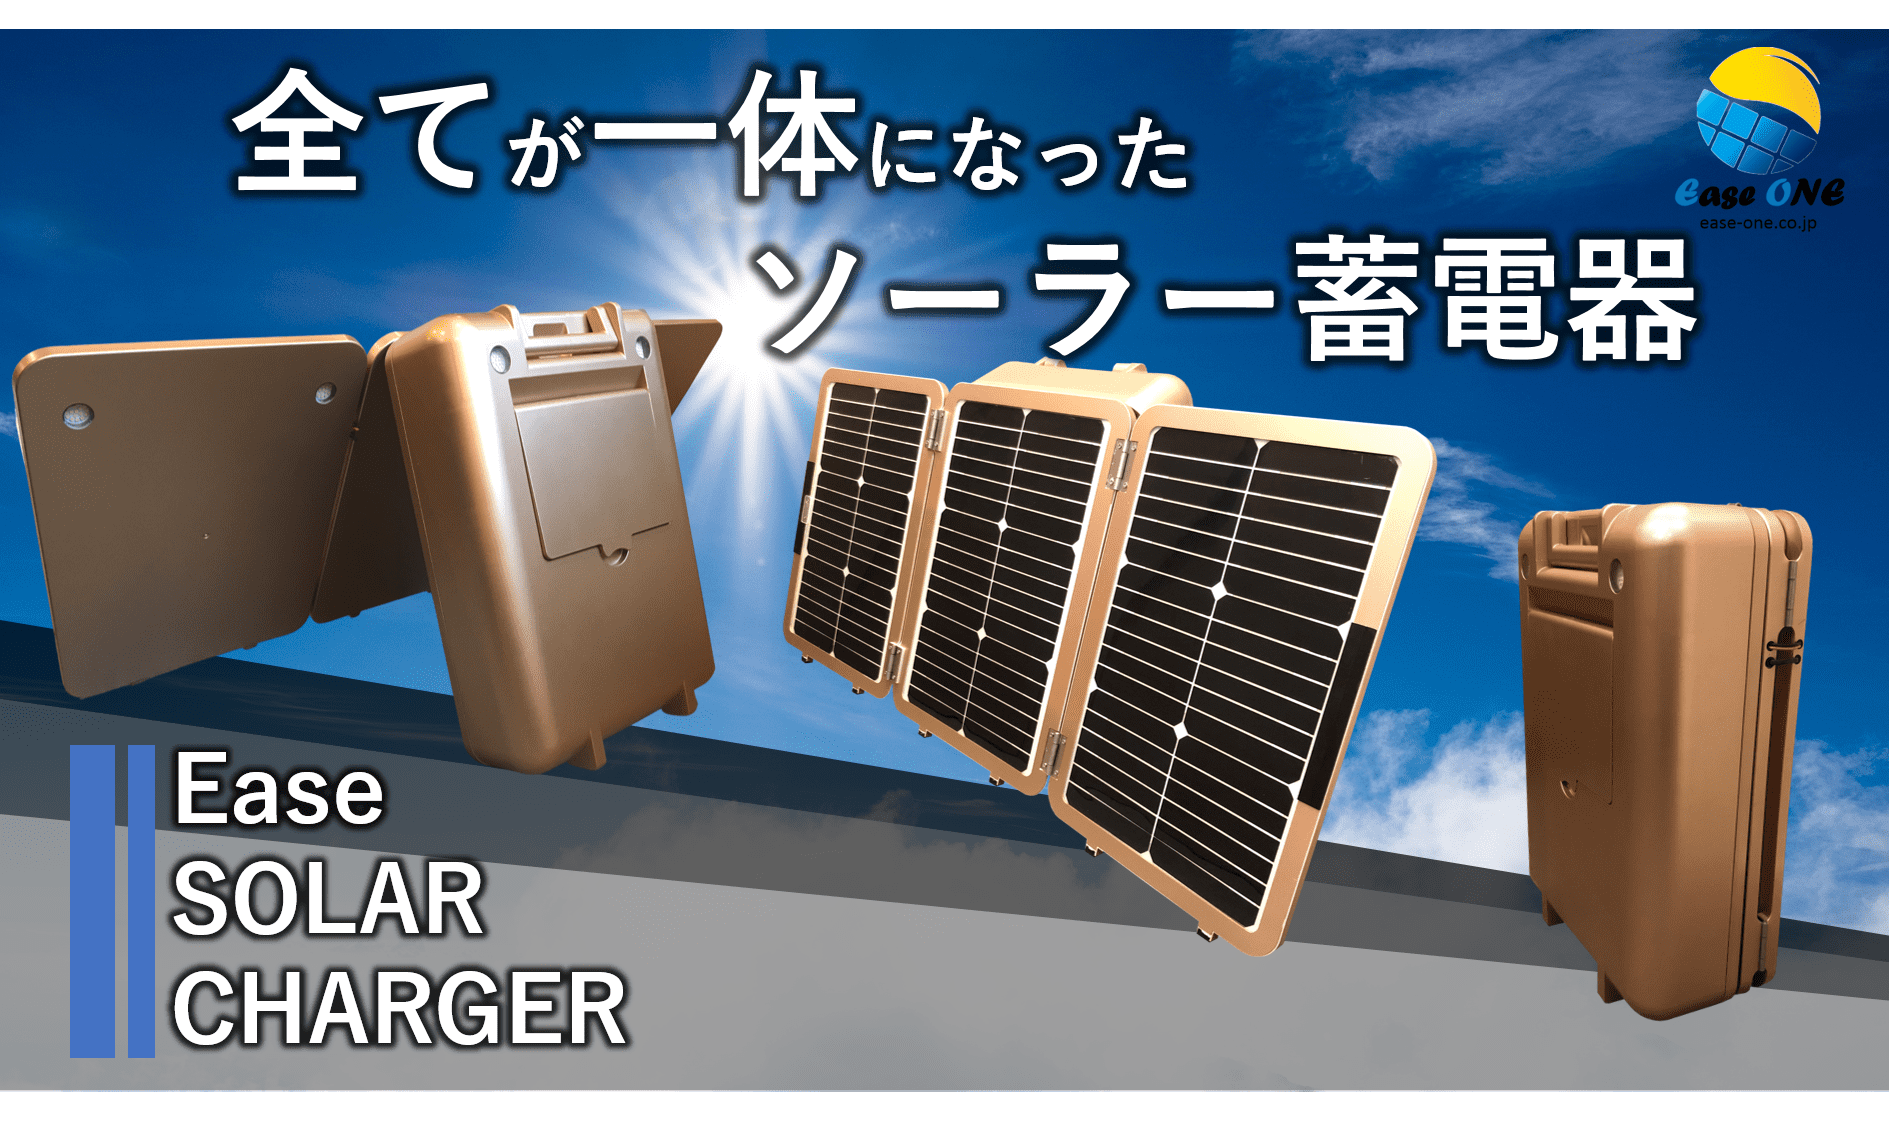 すべてが一体になったコンパクトソーラー蓄電器「Ease SOLAR CHARGER E-700」を4月1日に発売！ - 記事詳細